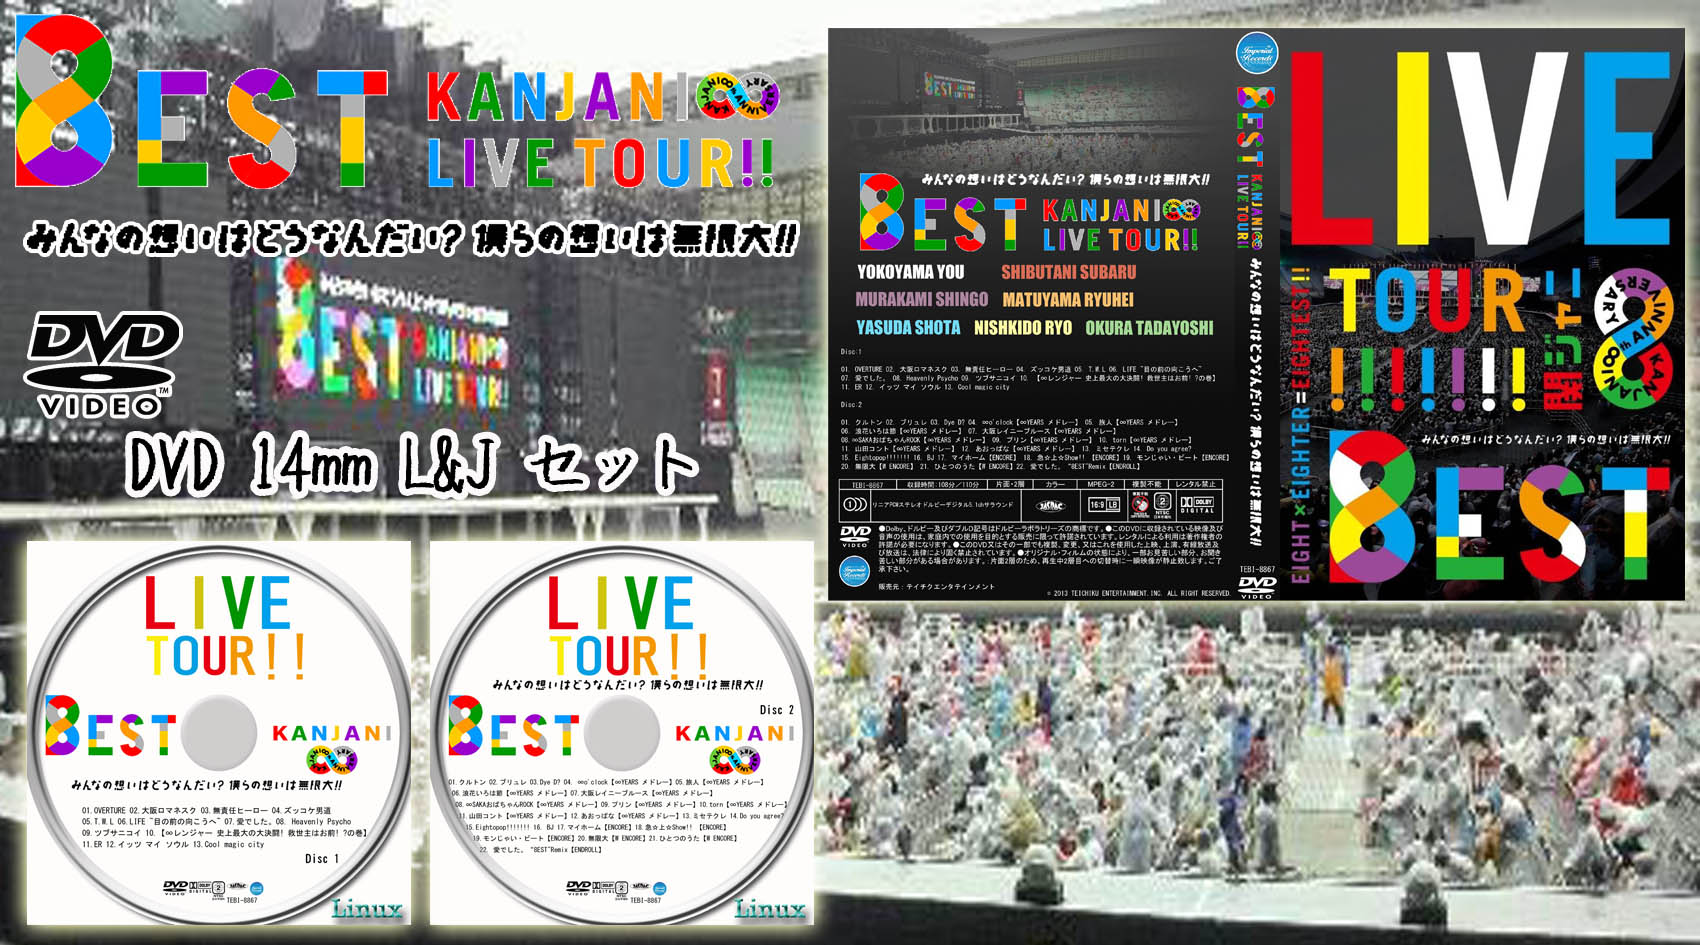 Lの杜KANJANI LIVE TOUR 8EST～みんなの想いはどうなんだい？僕らの 